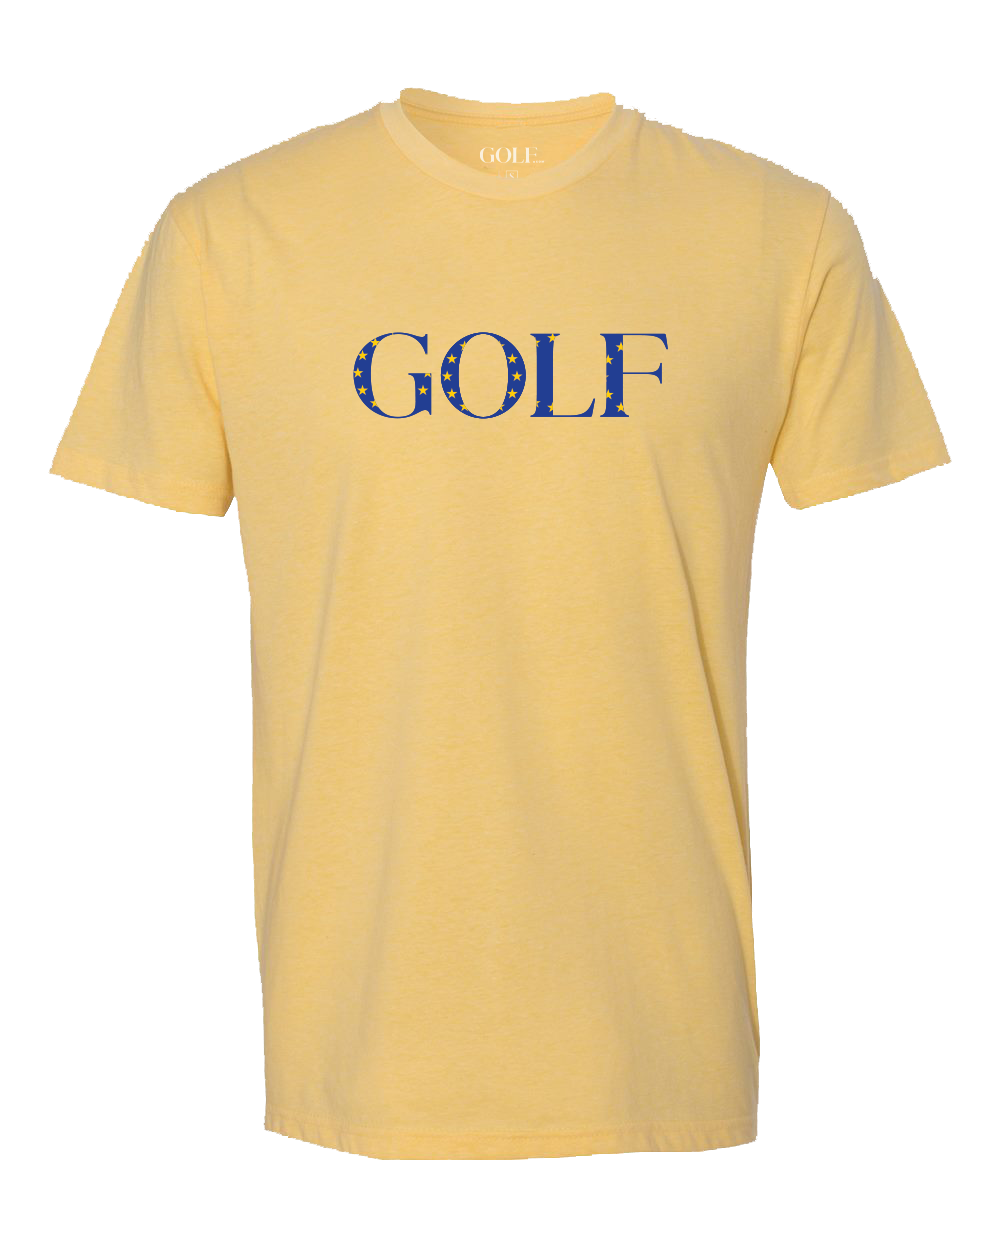 Team Europe GOLF T-Shirt -